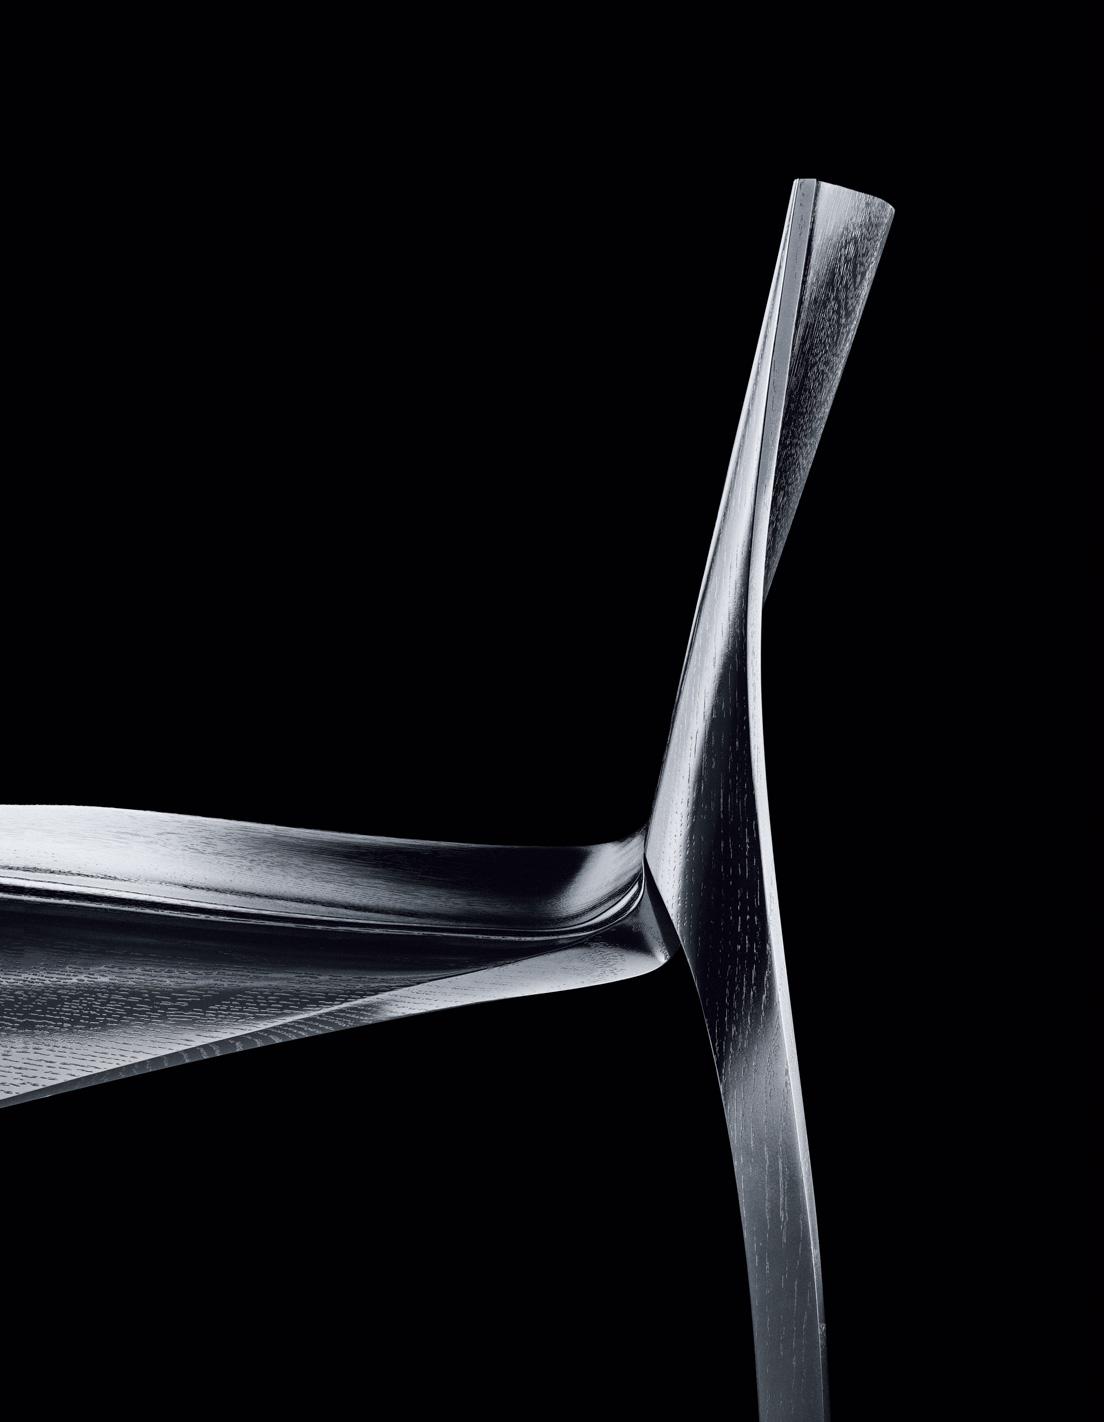 SEYUN Chair　セイユン チェア （2021）
Zaha Hadid Design　ザハ・ハディド・デザイン
左側の背もたれと左の後脚、右側の背もたれと右の後脚、前脚と座面という３つのアシンメトリーなピースで構成。大胆なシルエットと共にディテールのカーブも美しい。「SEYUN」は星雲をモチーフに名づけられた。